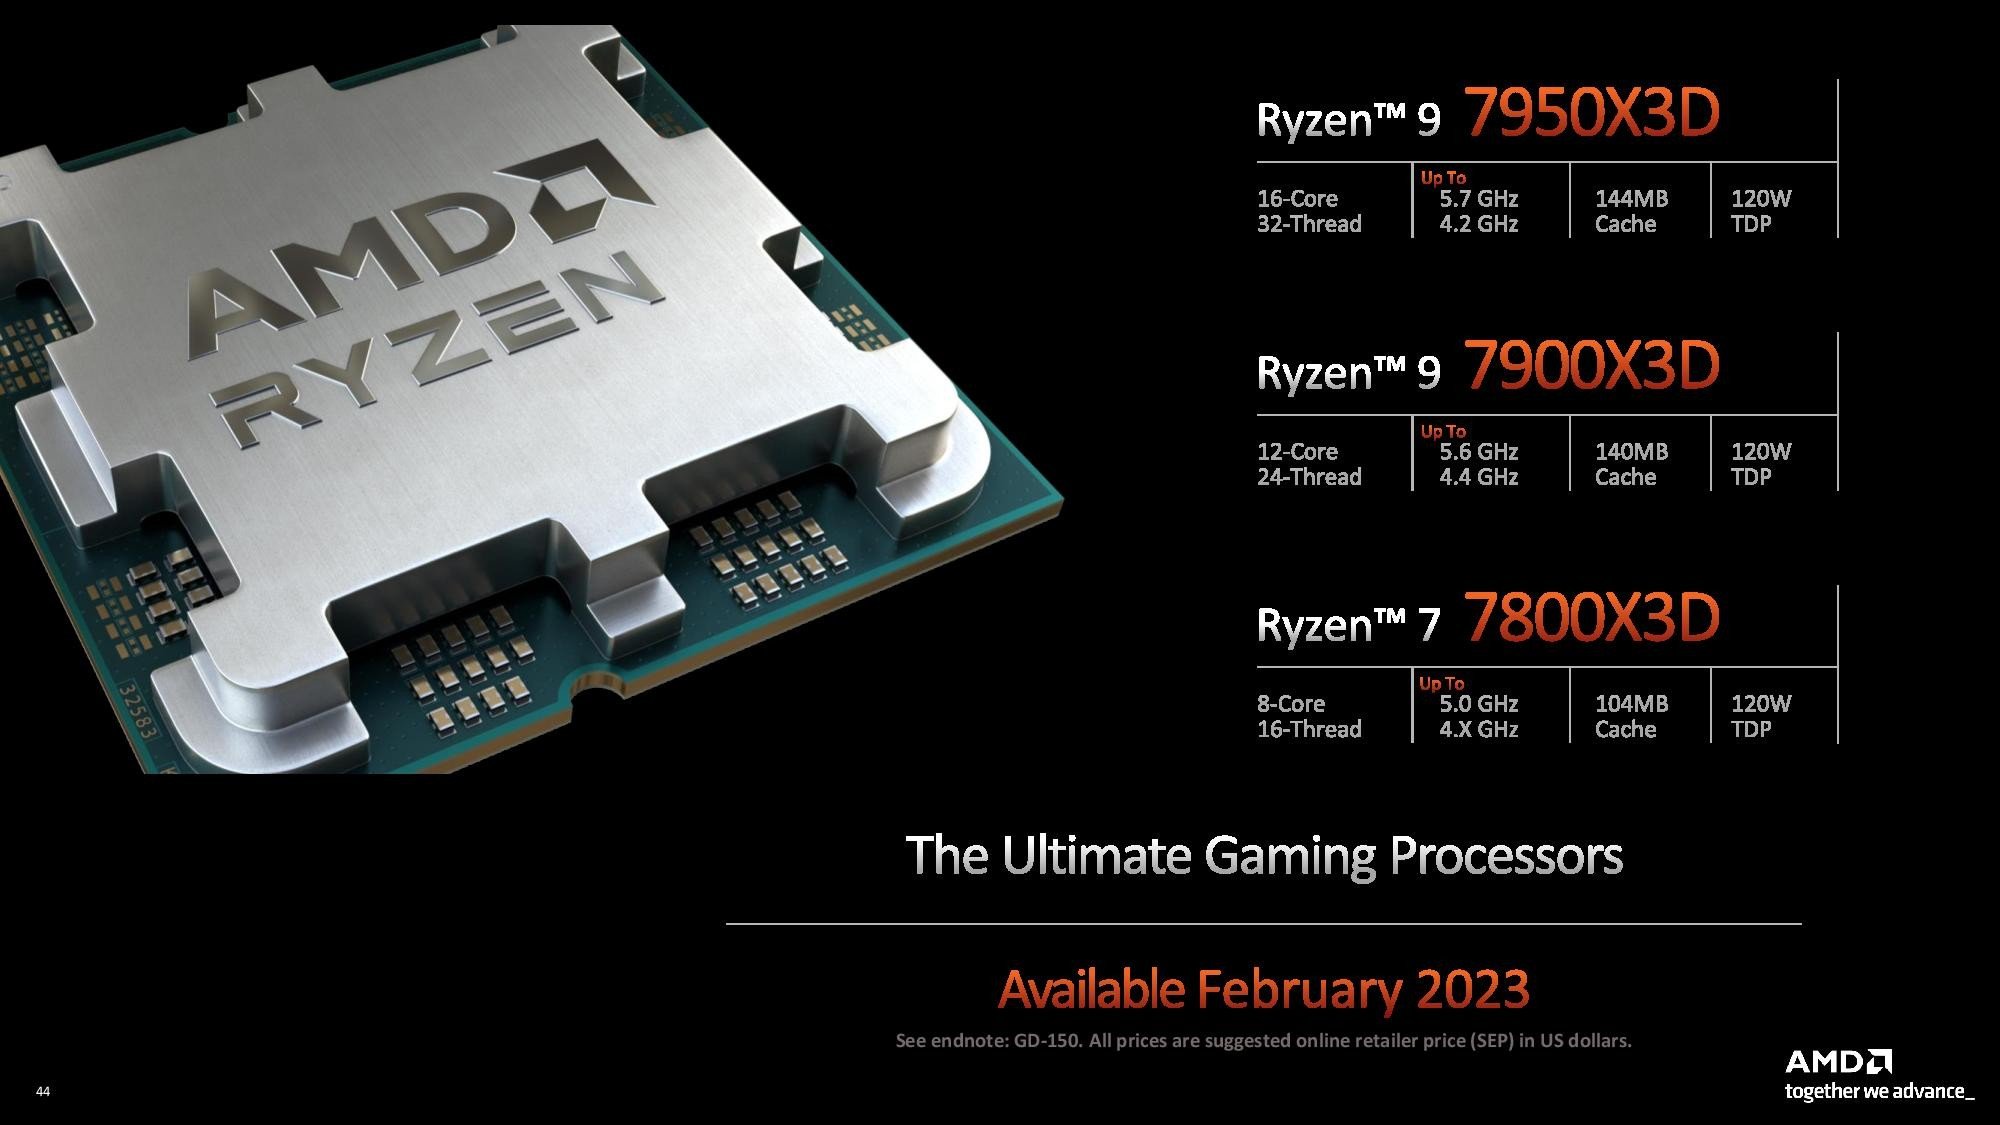 3D V-Cache Destekli Ryzen 7000X3D İşlemciler Tanıtıldı- AMD Ryzen 9 7950X3D, Ryzen 9 7900X3D, Ryzen 7 7800X3D